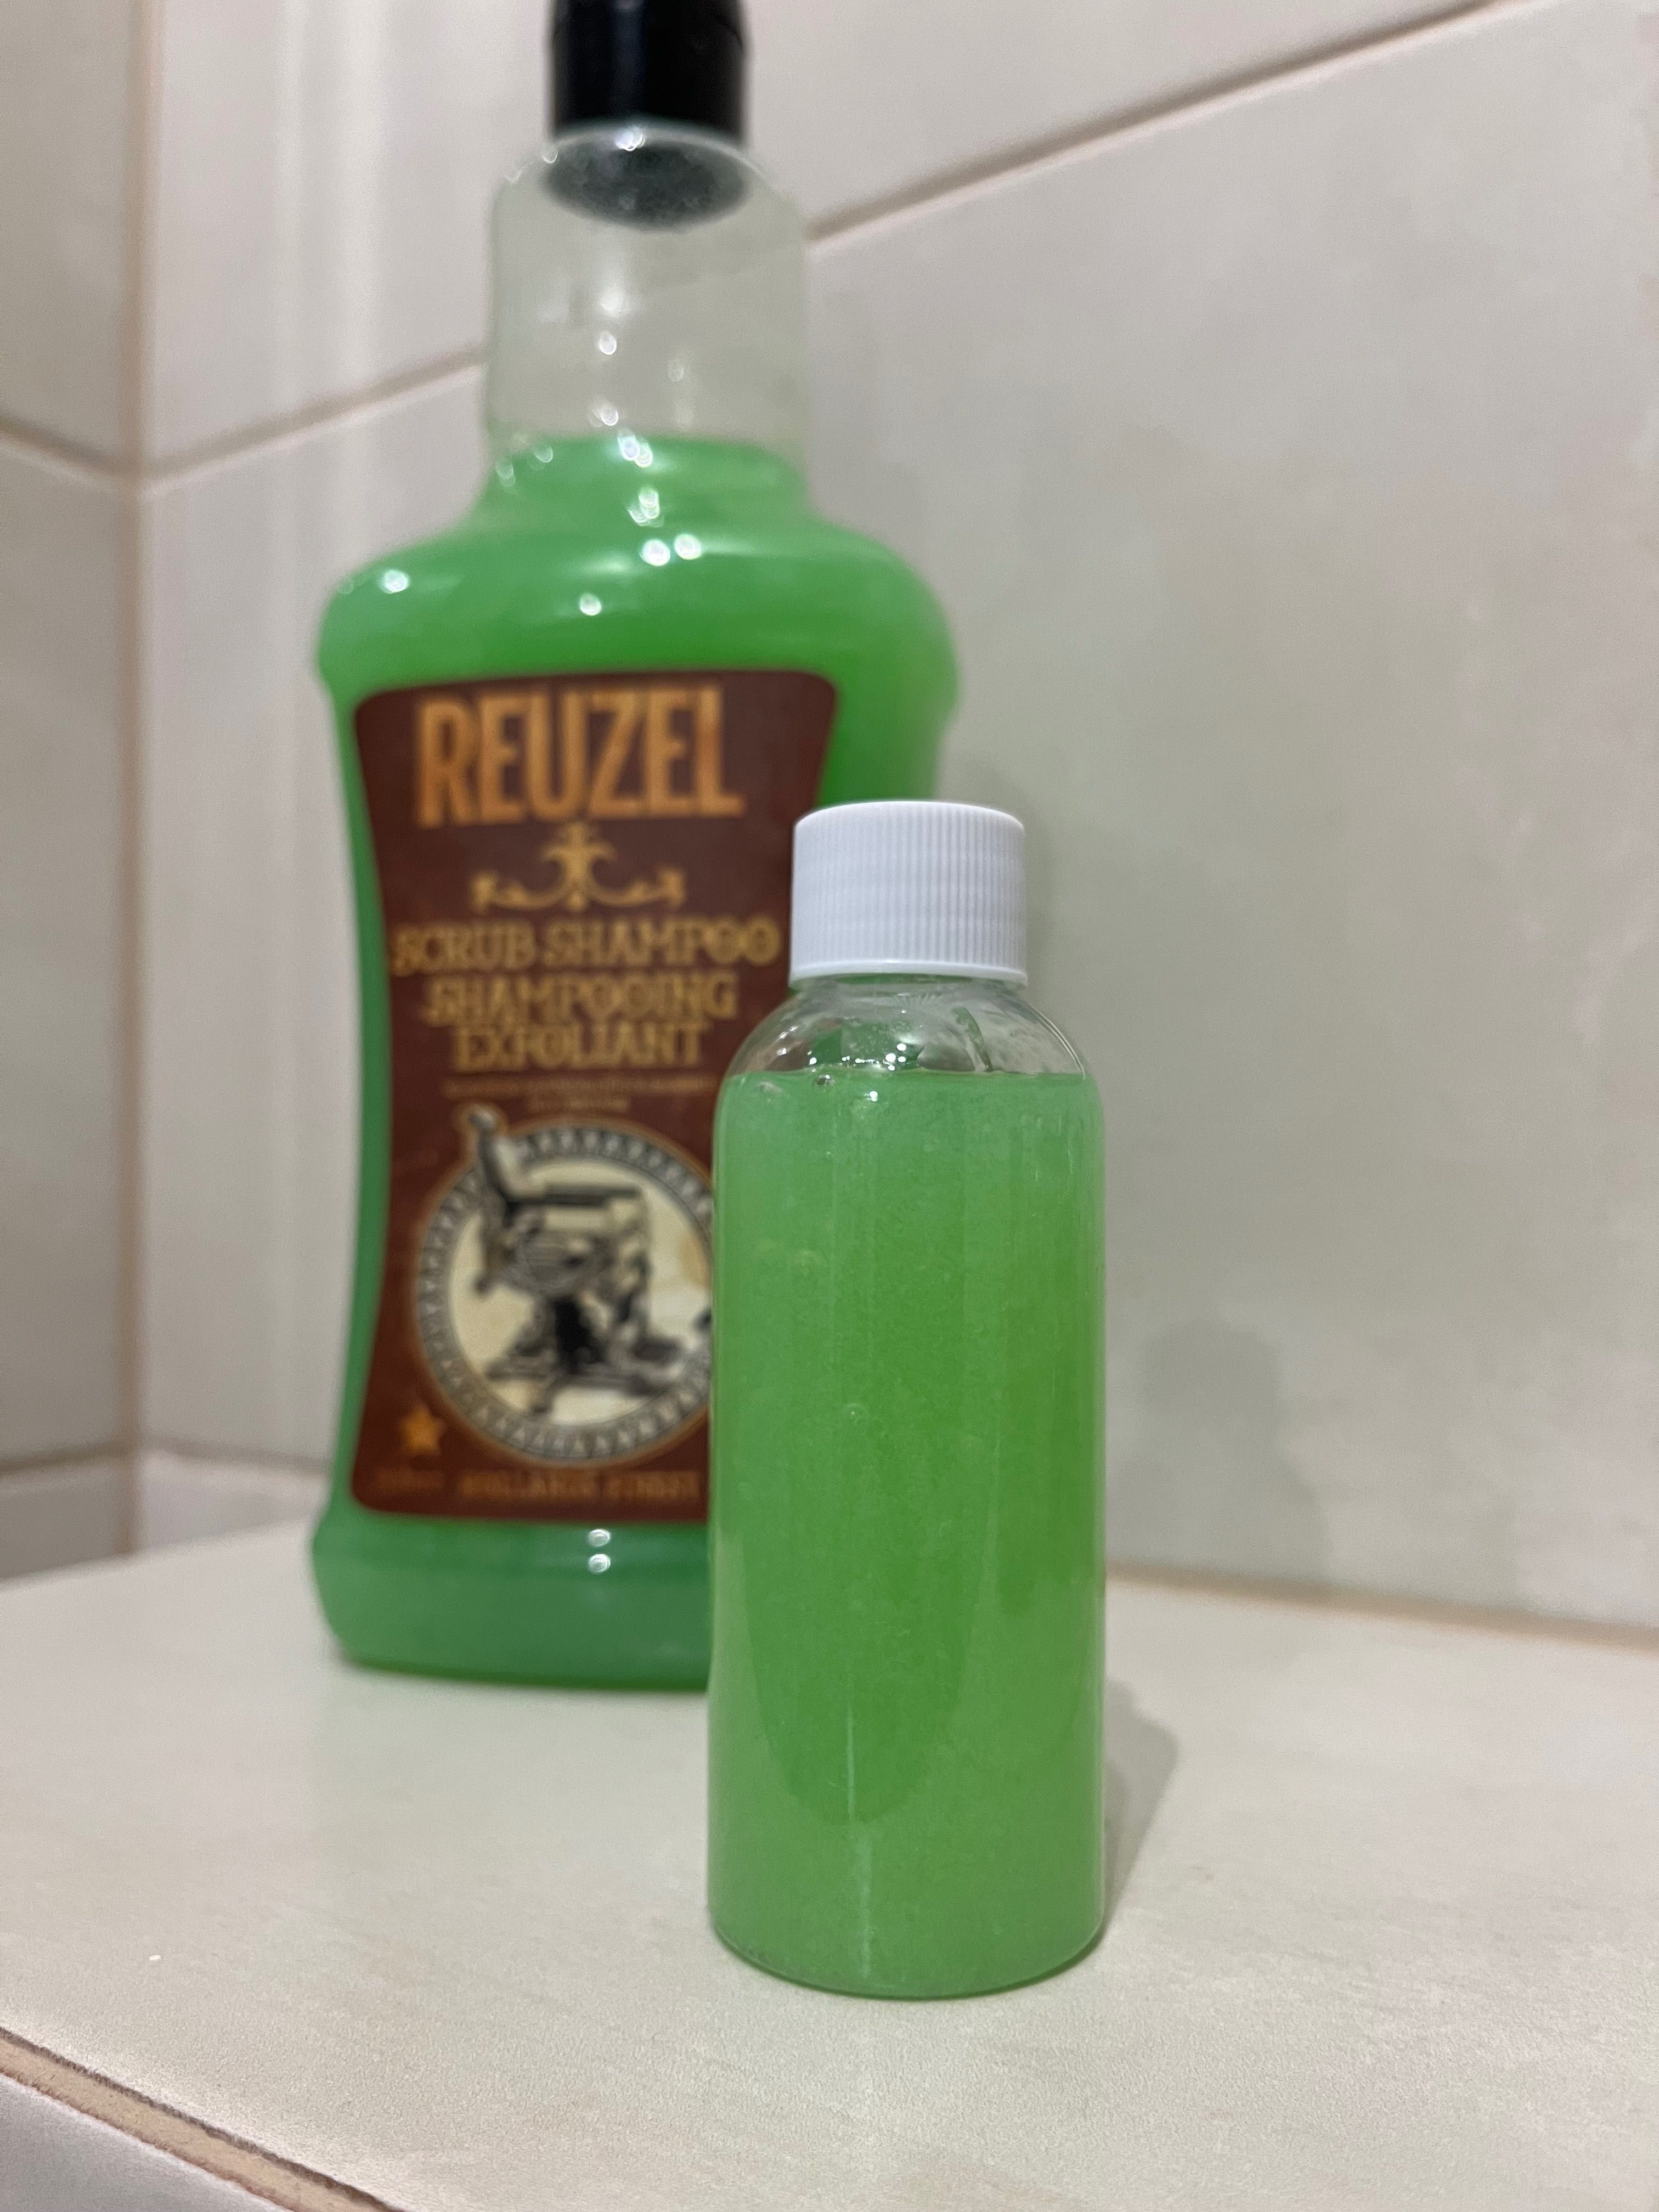 Reuzel scrub shampoo - szampon oczyszczający 75 ml